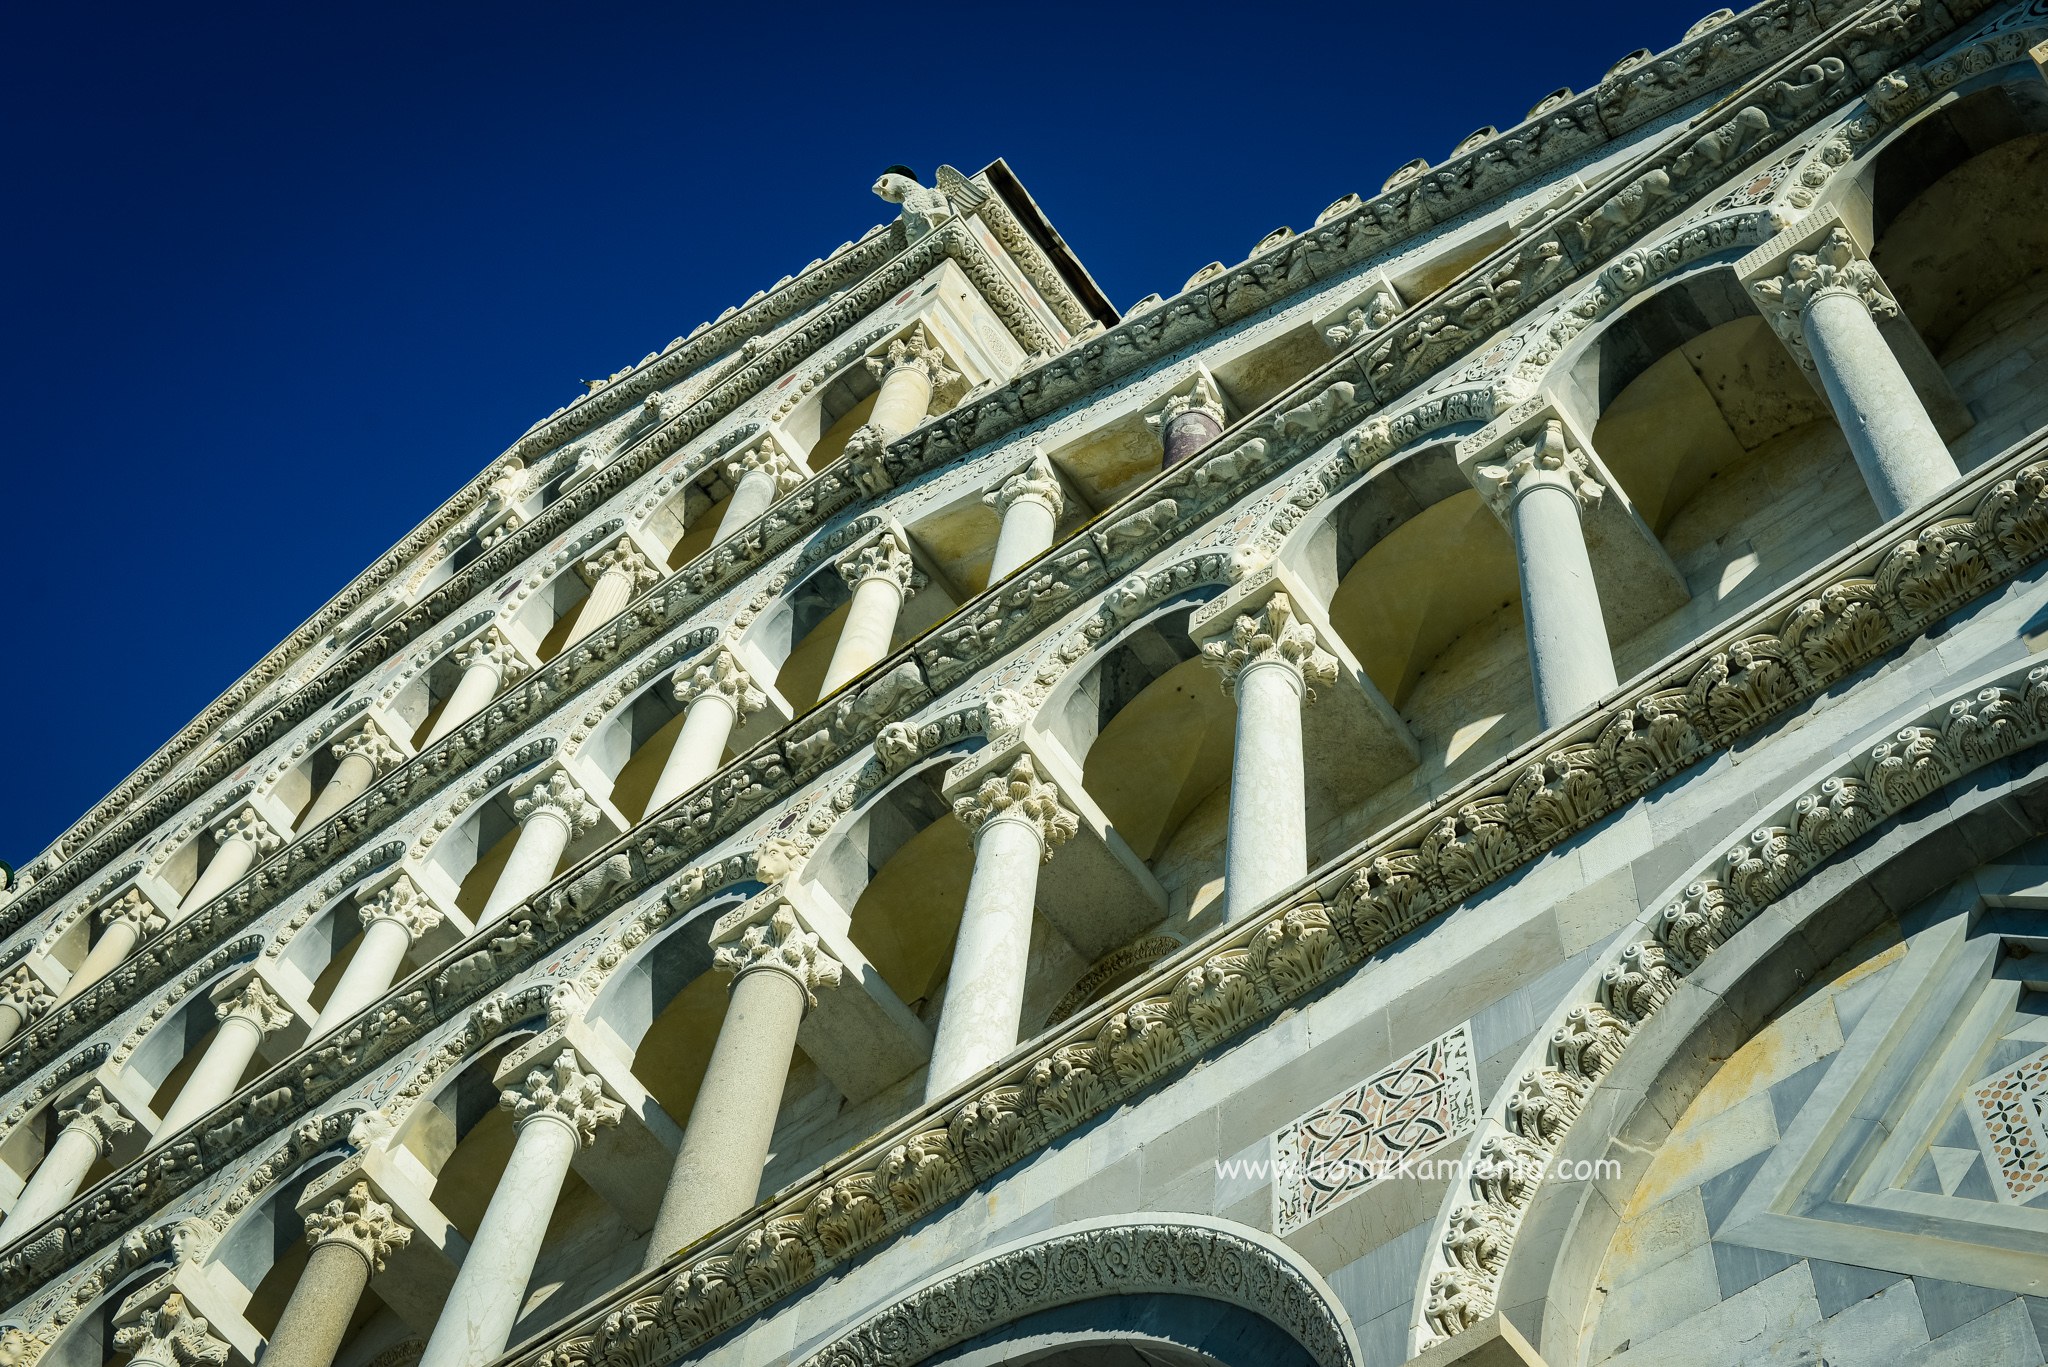 Duomo w Pizie, Plac Cudów, Dom z Kamienia blog